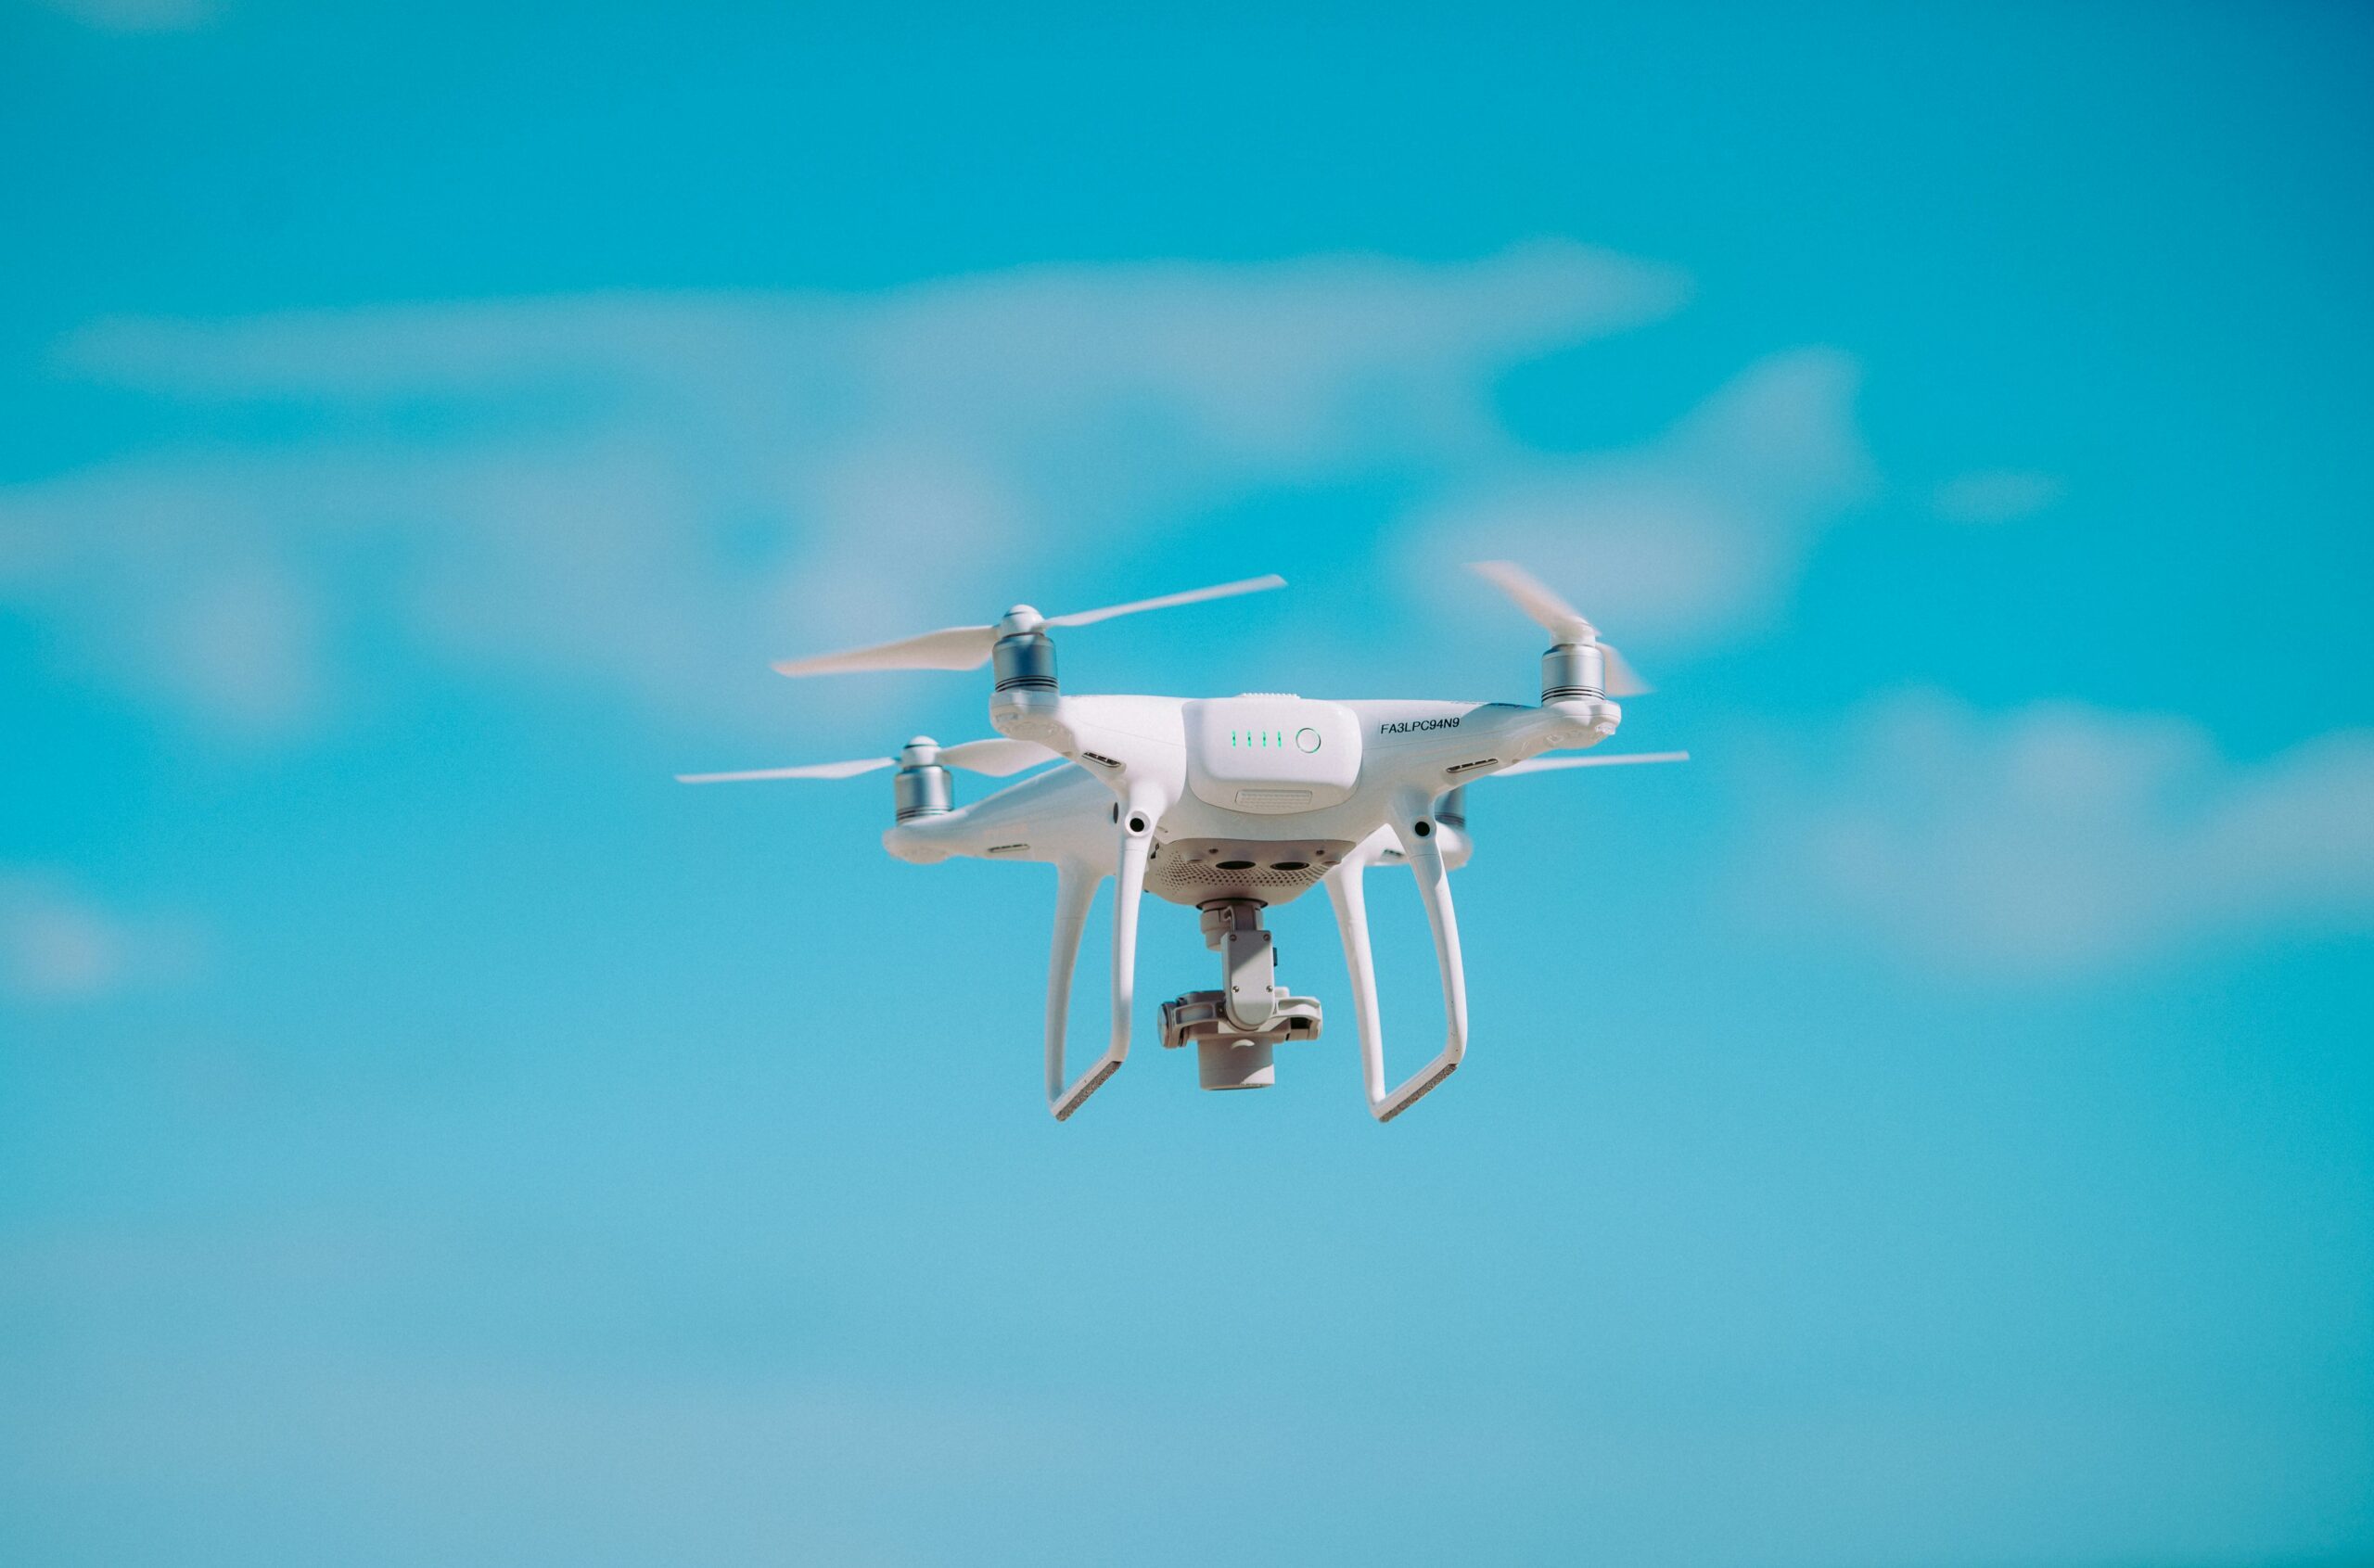 Comment se protéger efficacement contre les drones intrusifs ?